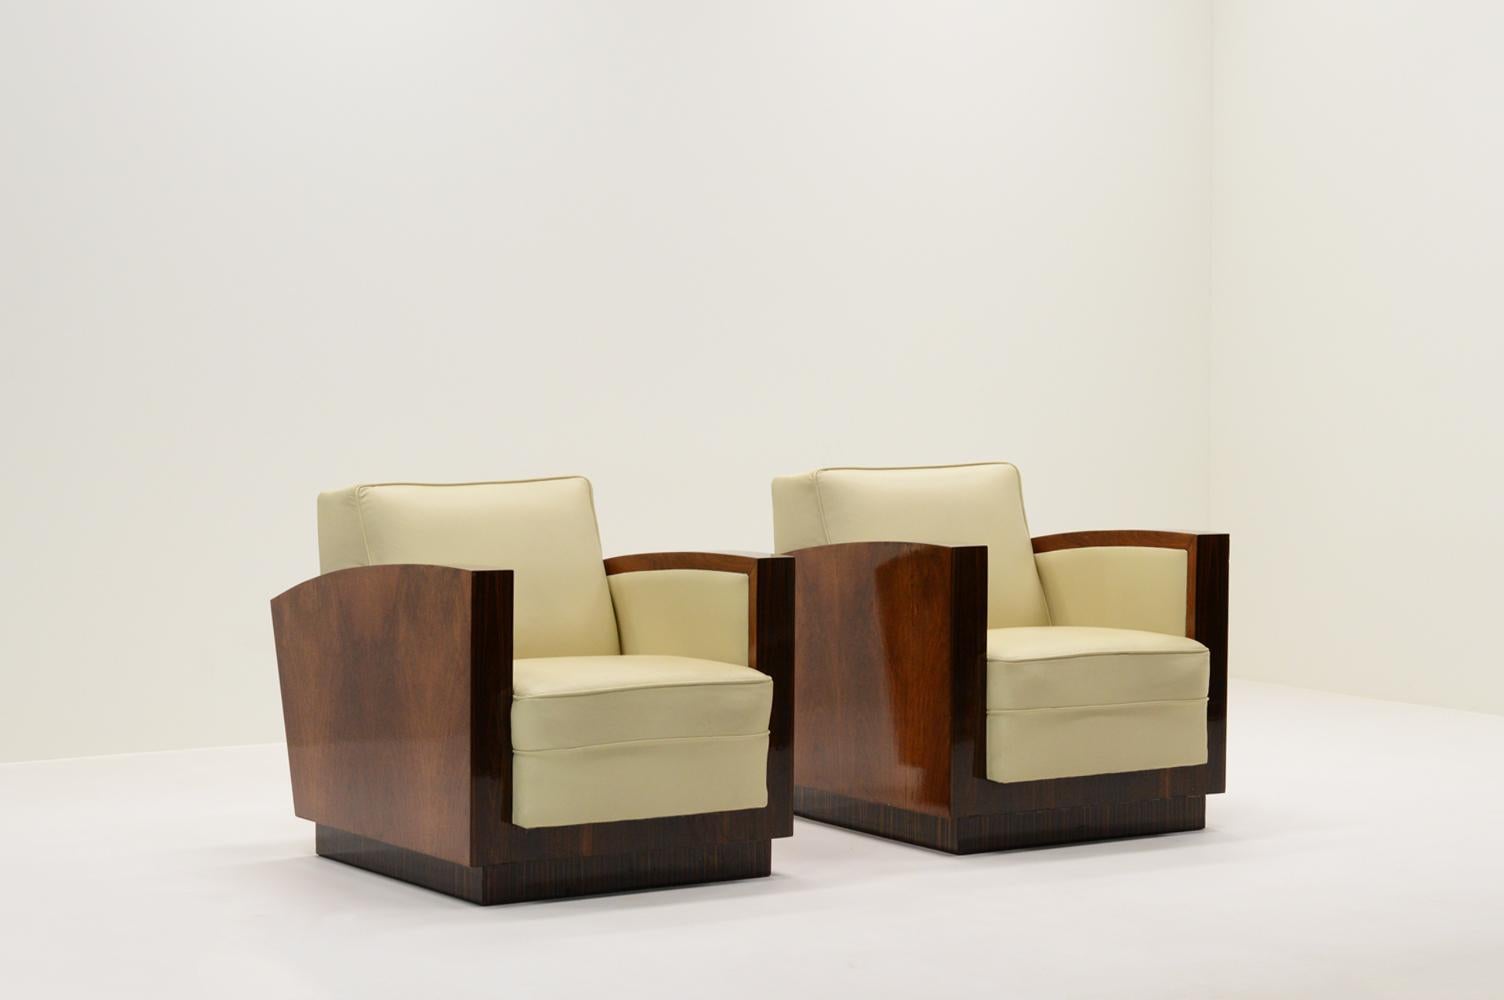 Satz von 2 Art-Déco-Clubsesseln, Frankreich, 1930er-Jahre. Die Stühle sind aus 3 Arten von lackiertem tropischem Hartholzfurnier gefertigt und mit cremeweißem Leder gepolstert. Minimalistisches und typisch französisches Art-Deco-Design. Alters- und